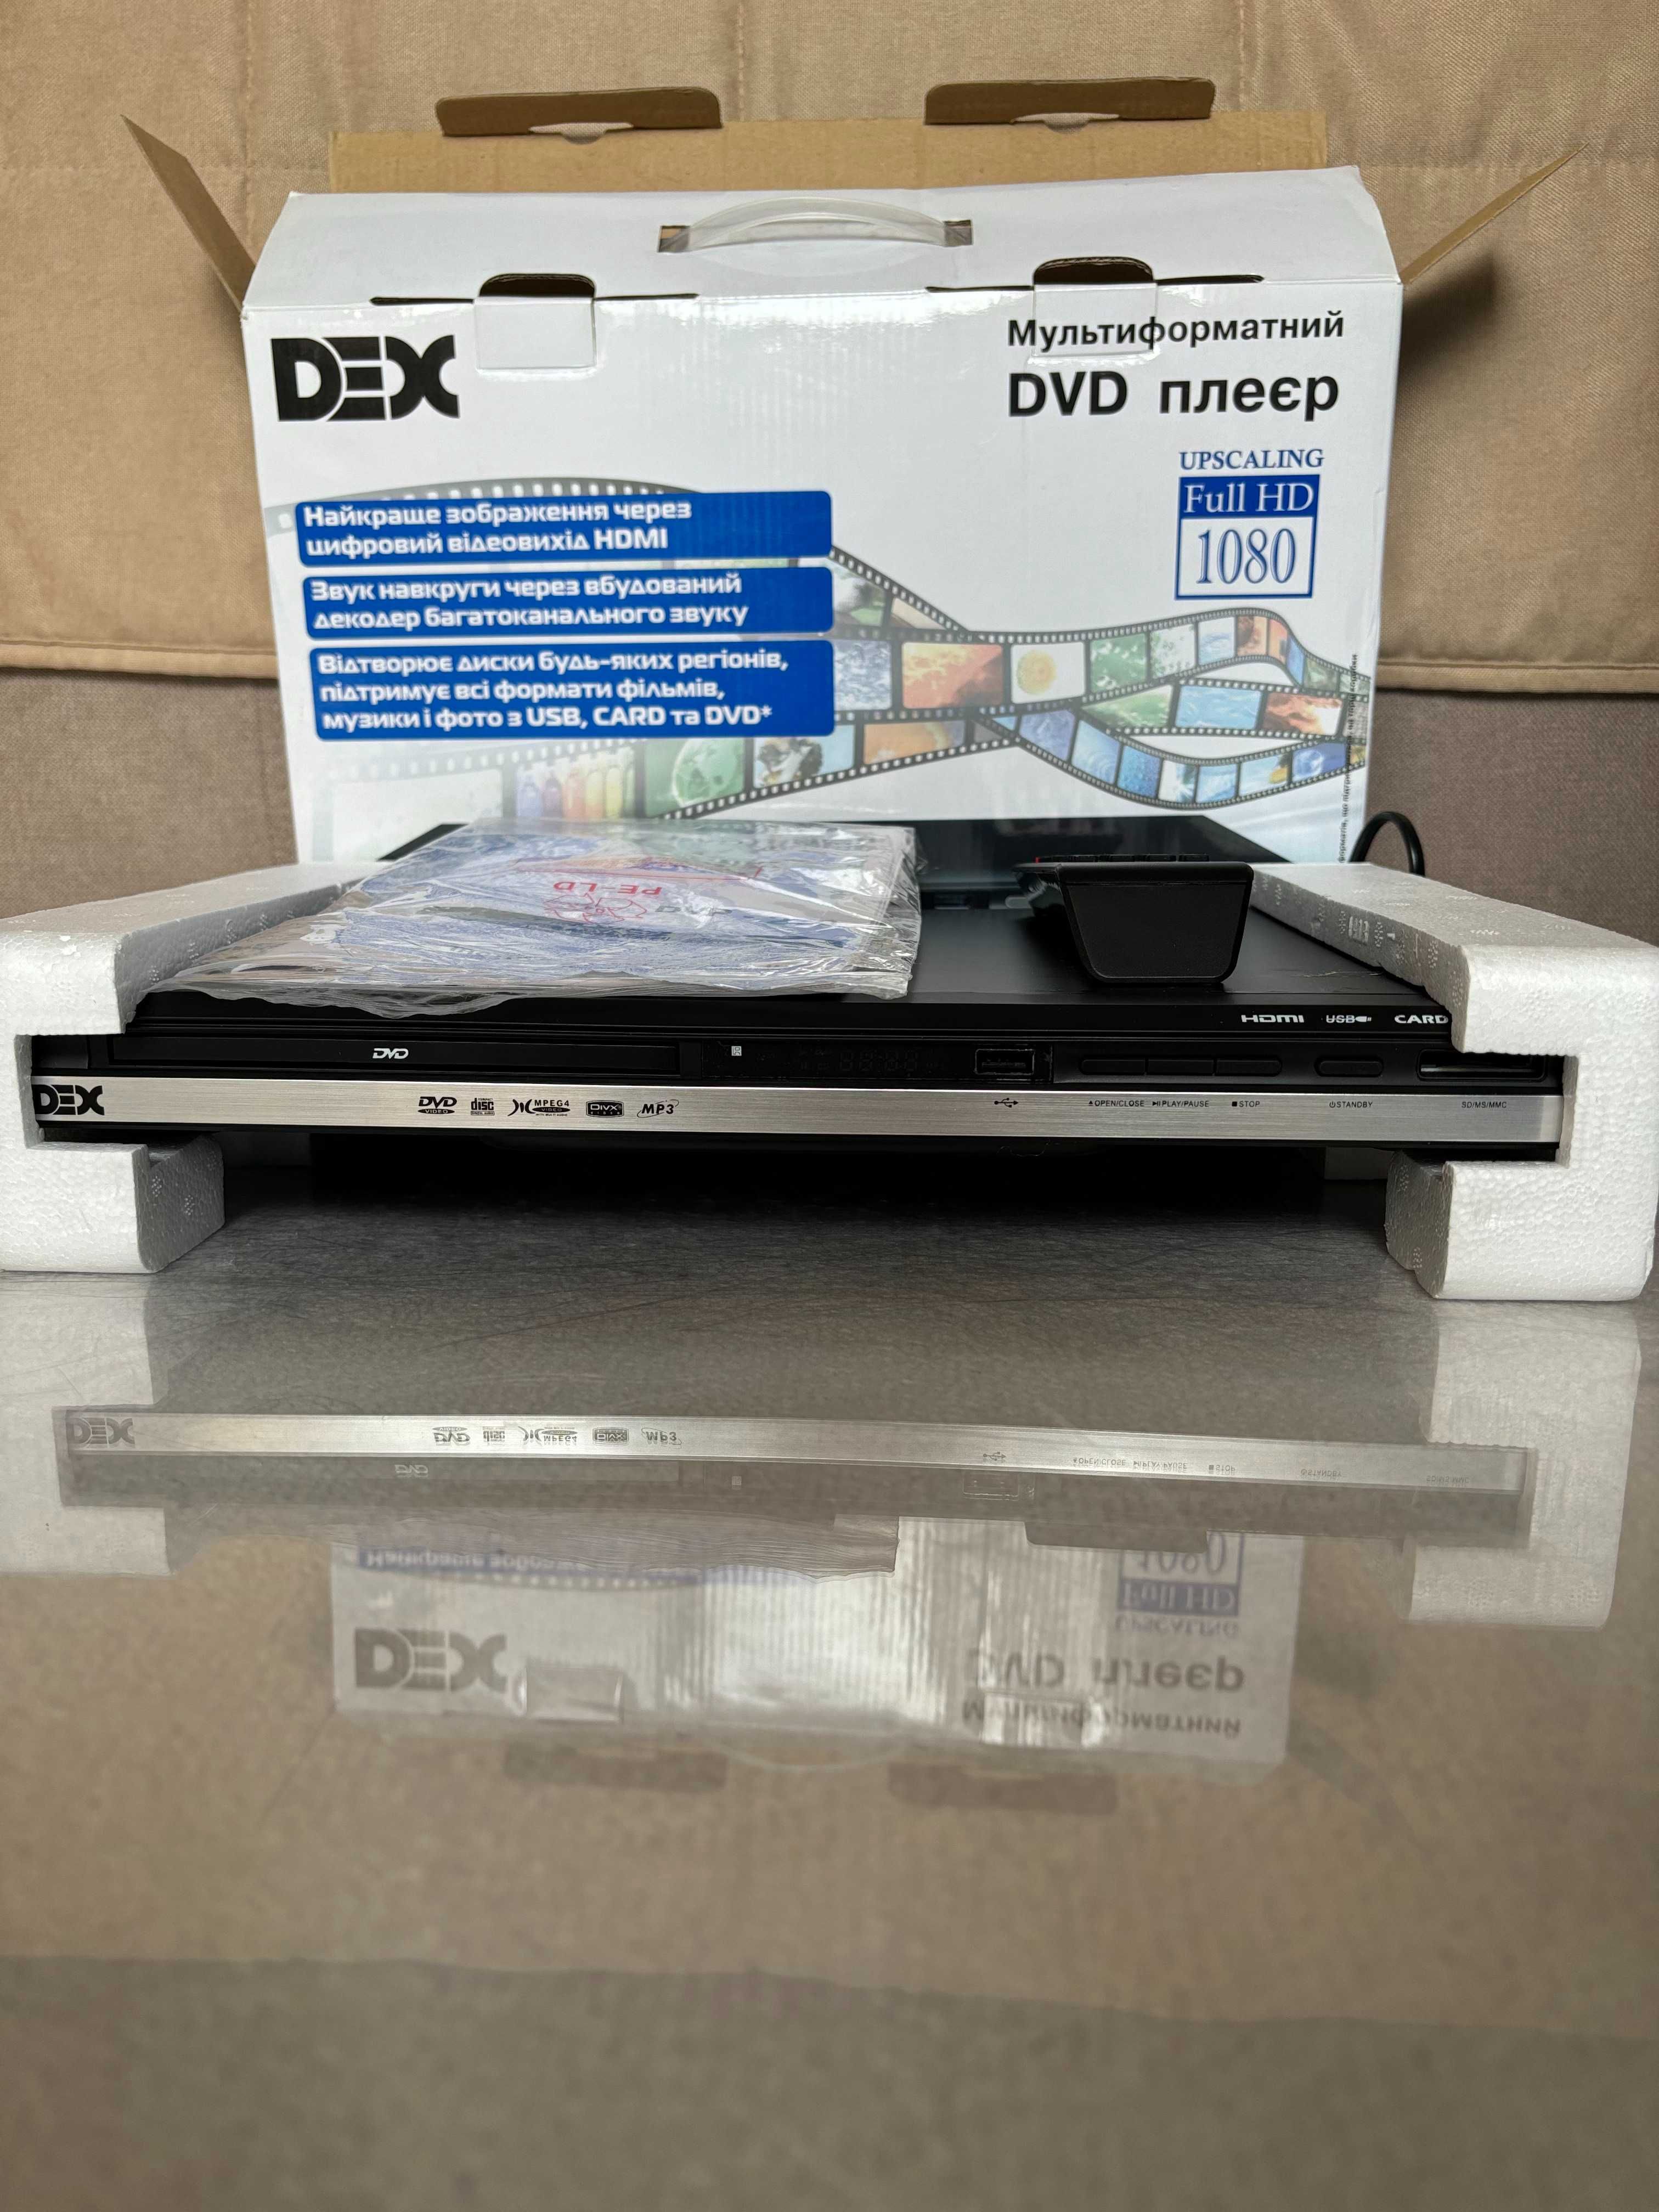 DVD-плеер DEX DVP 273